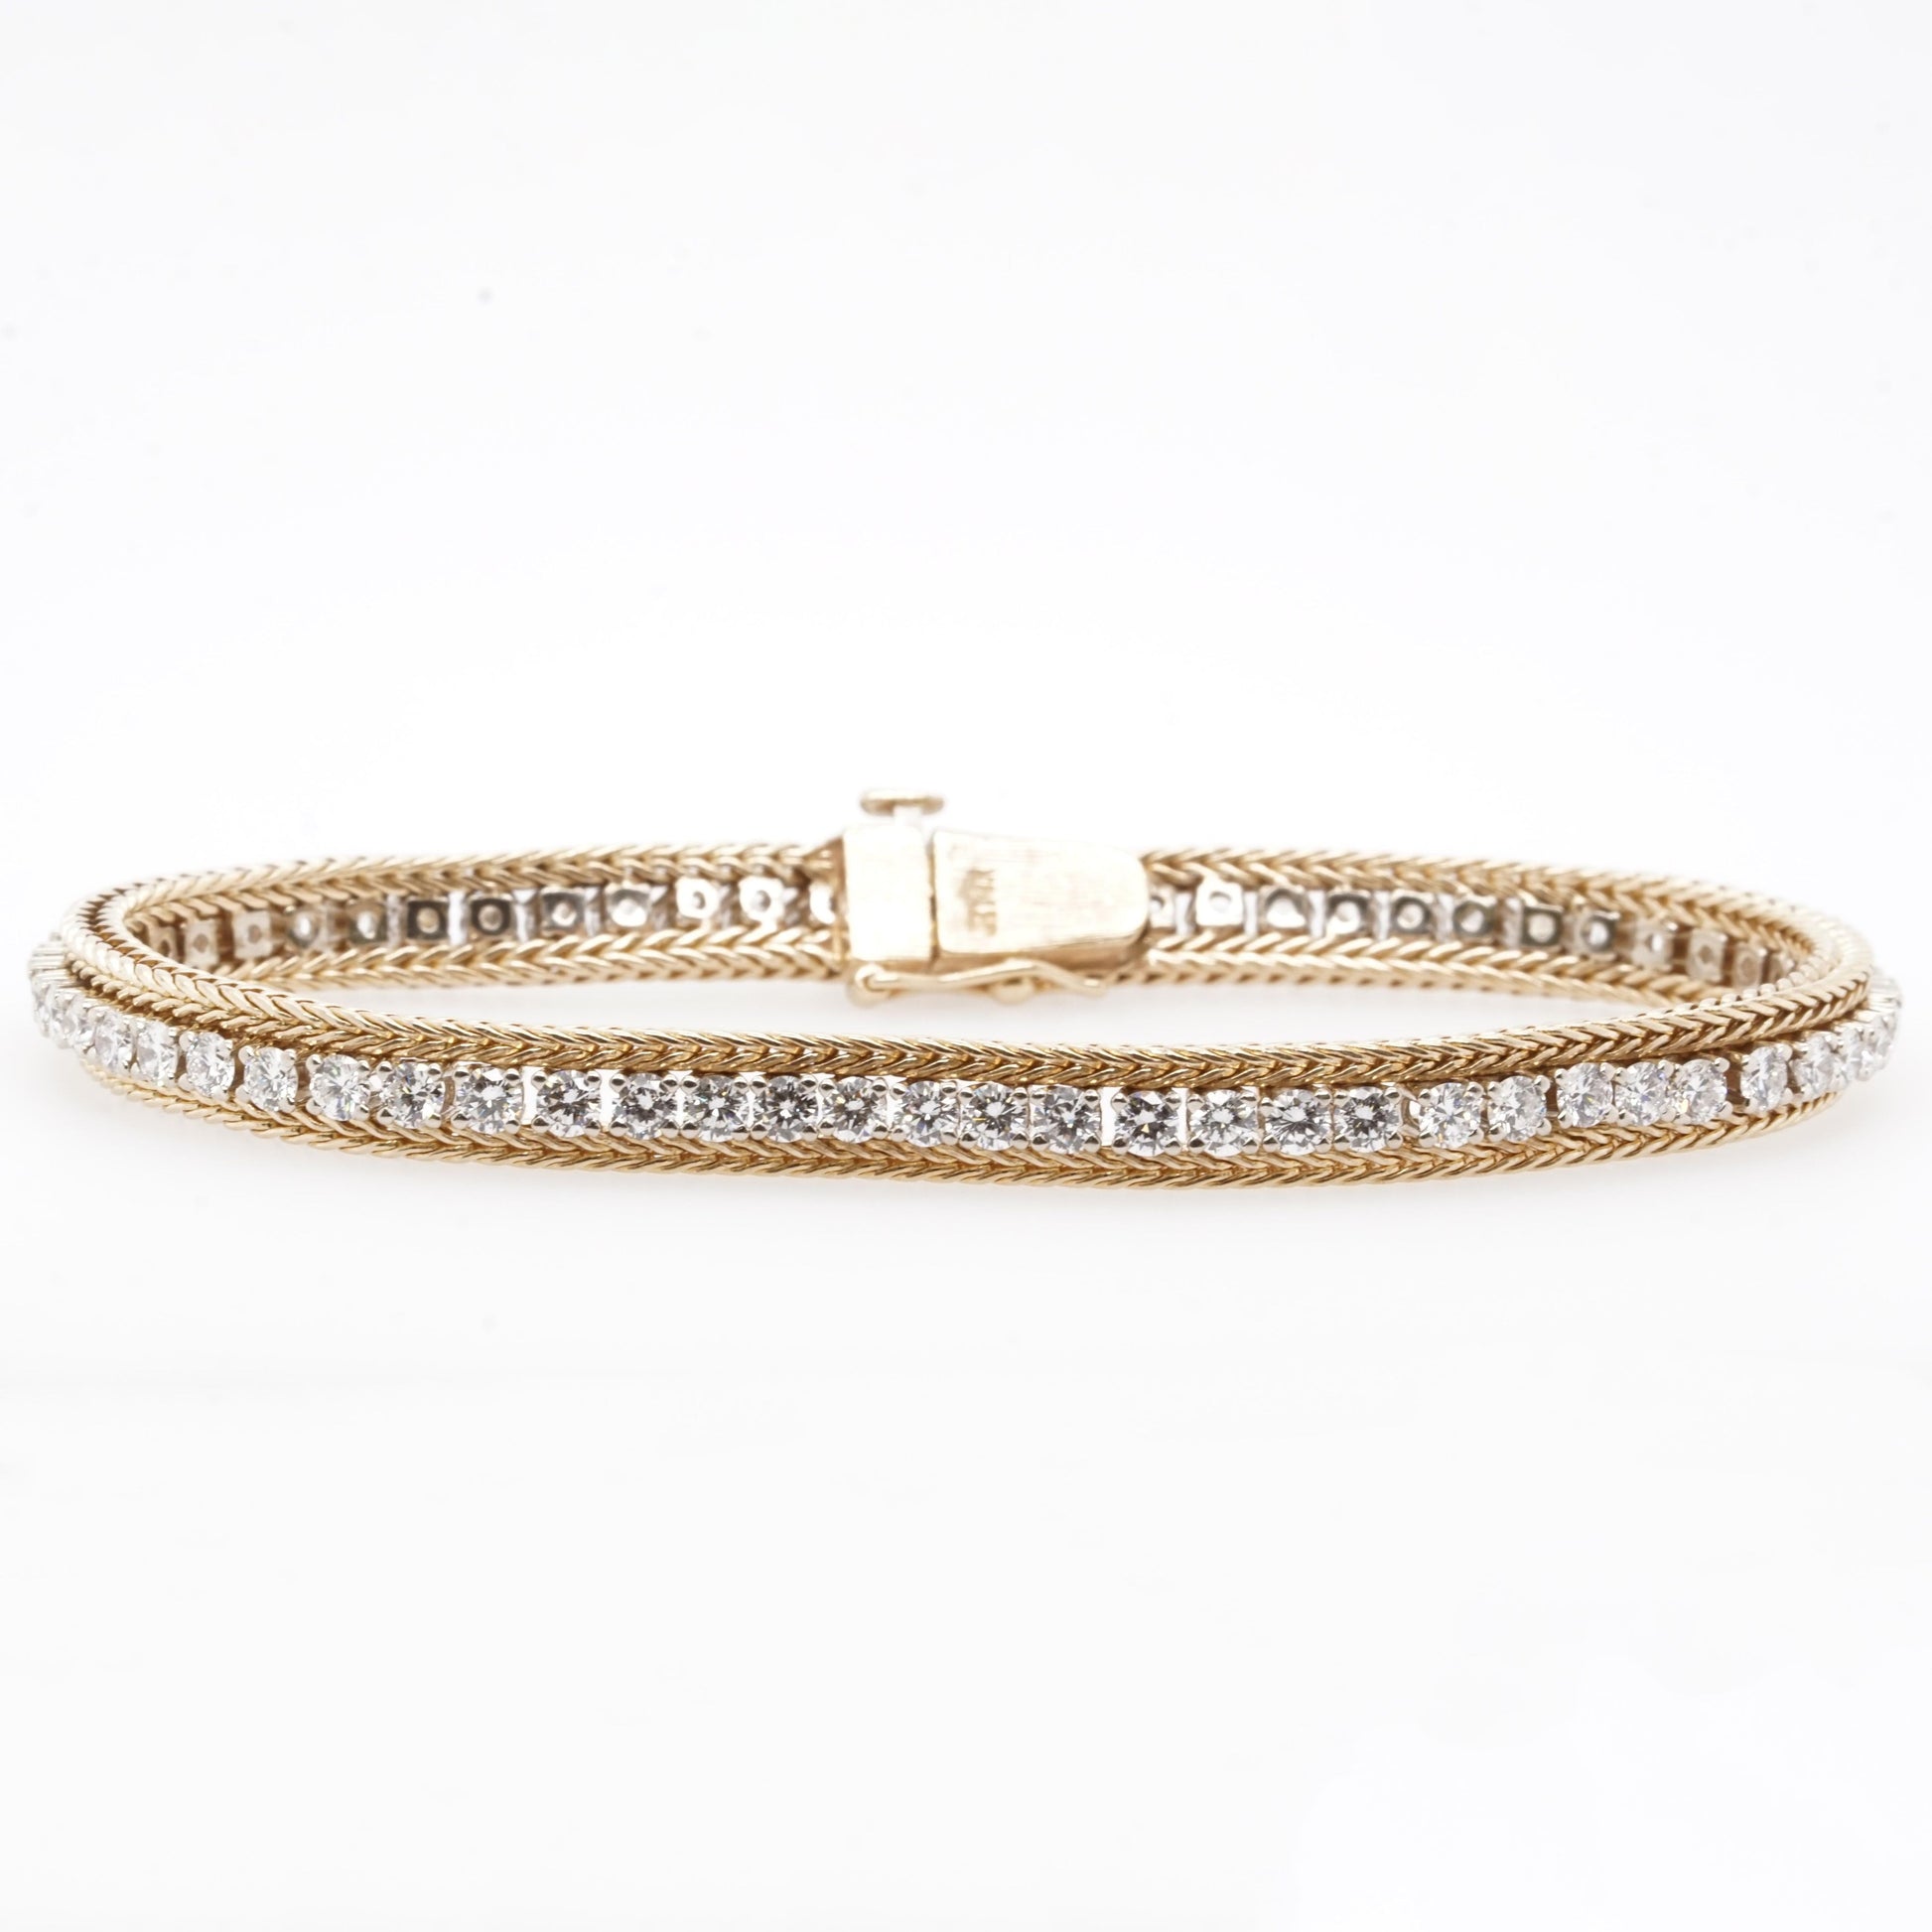 Louis Vuitton split leather bracelet  Louis vuitton bracelet, Mens  designer fashion, Louis vuitton artsy